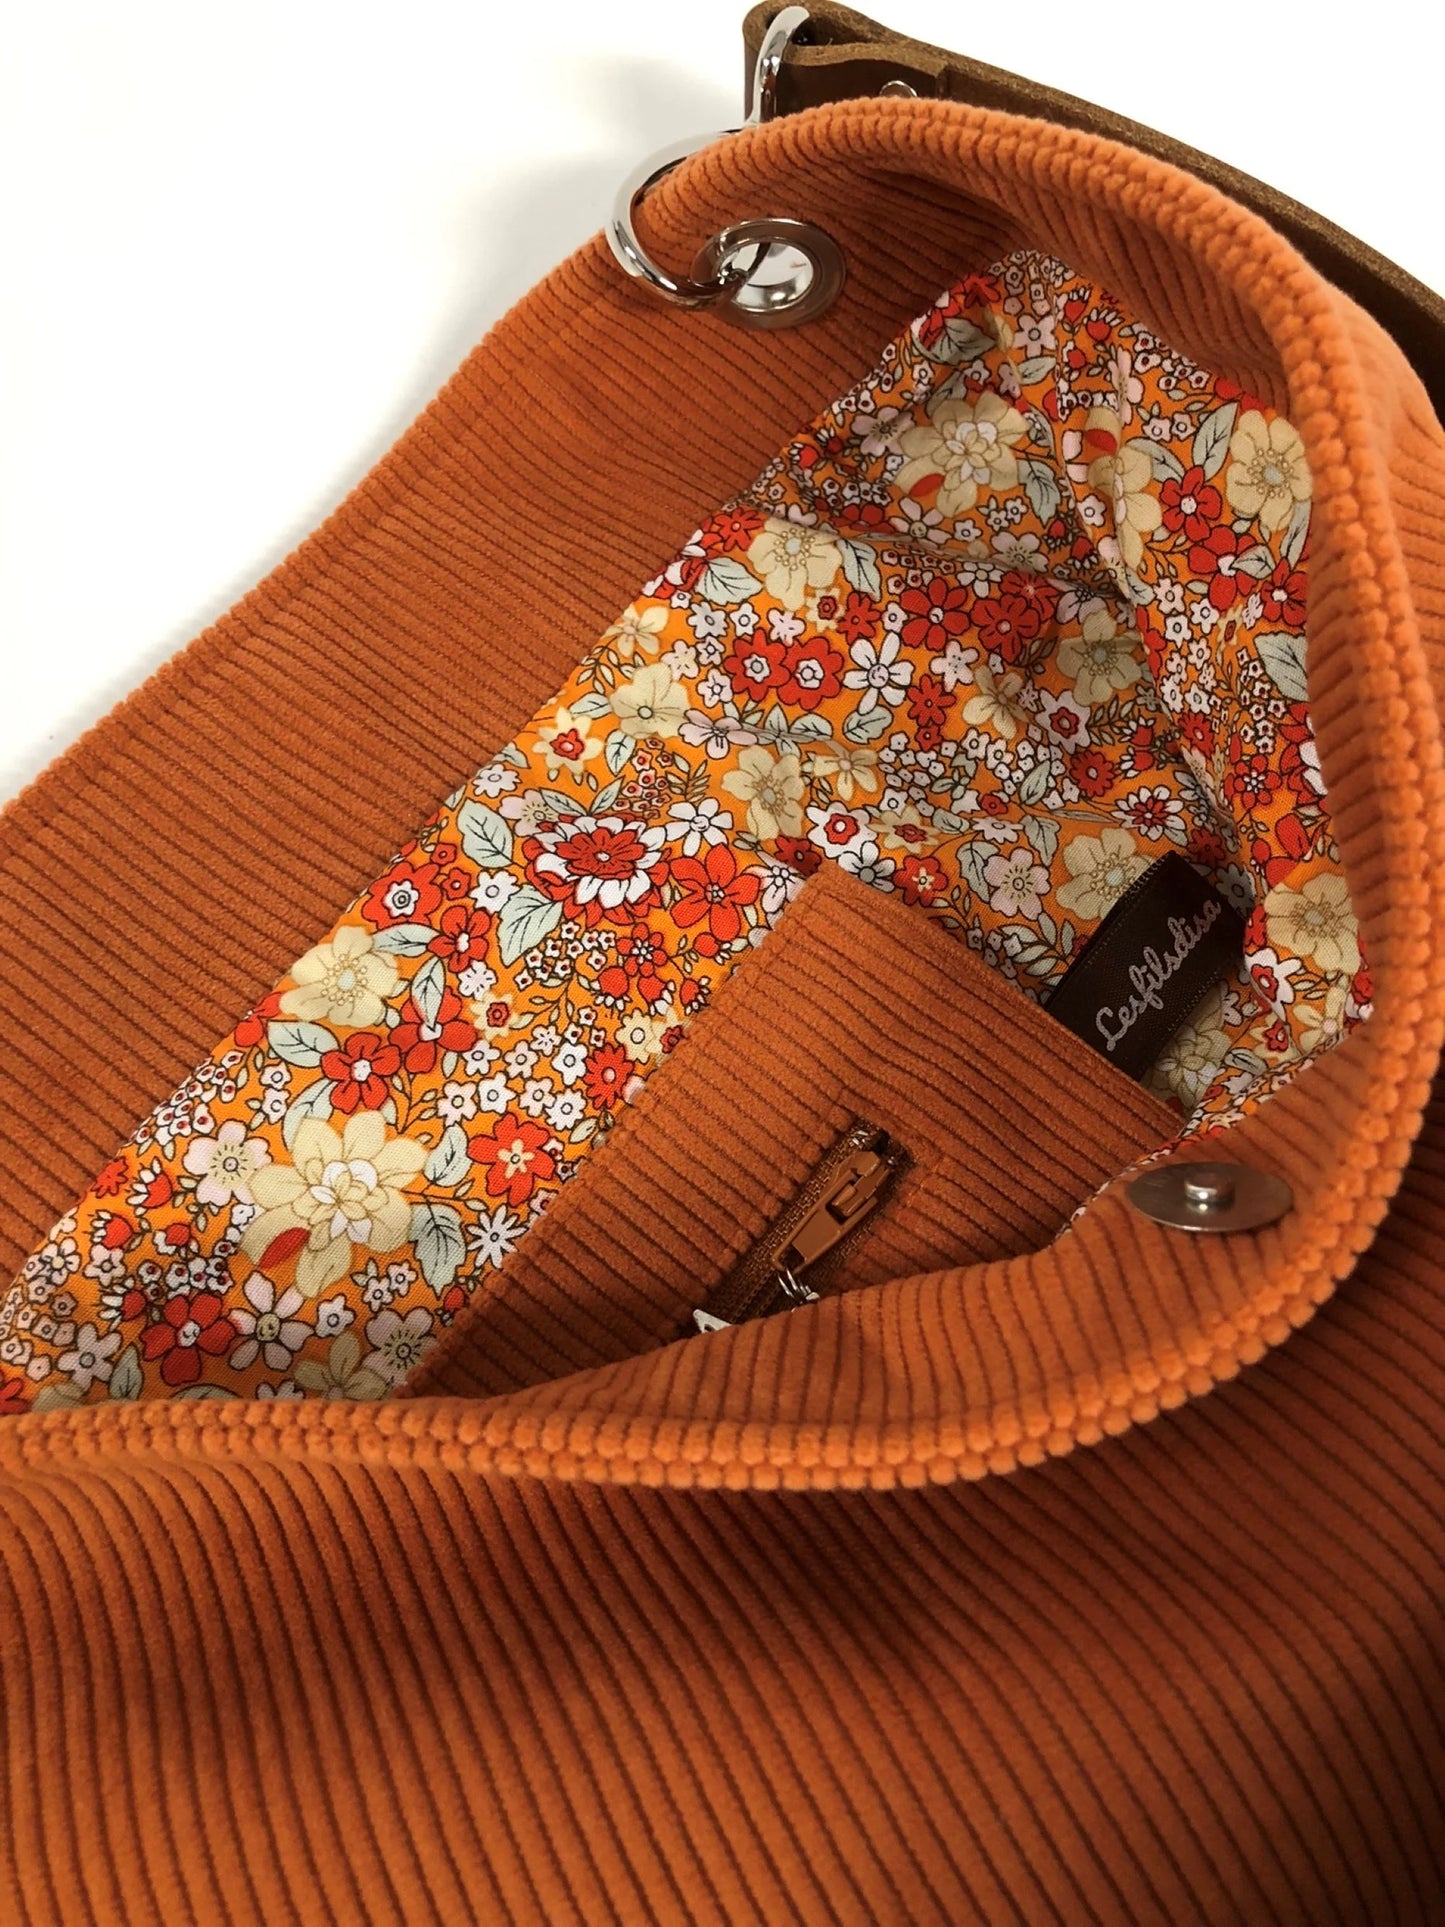 La poche intérieure zippée du sac hobo Lesfilsdisa en velours côtelé orange et son anse en cuir marron amovible